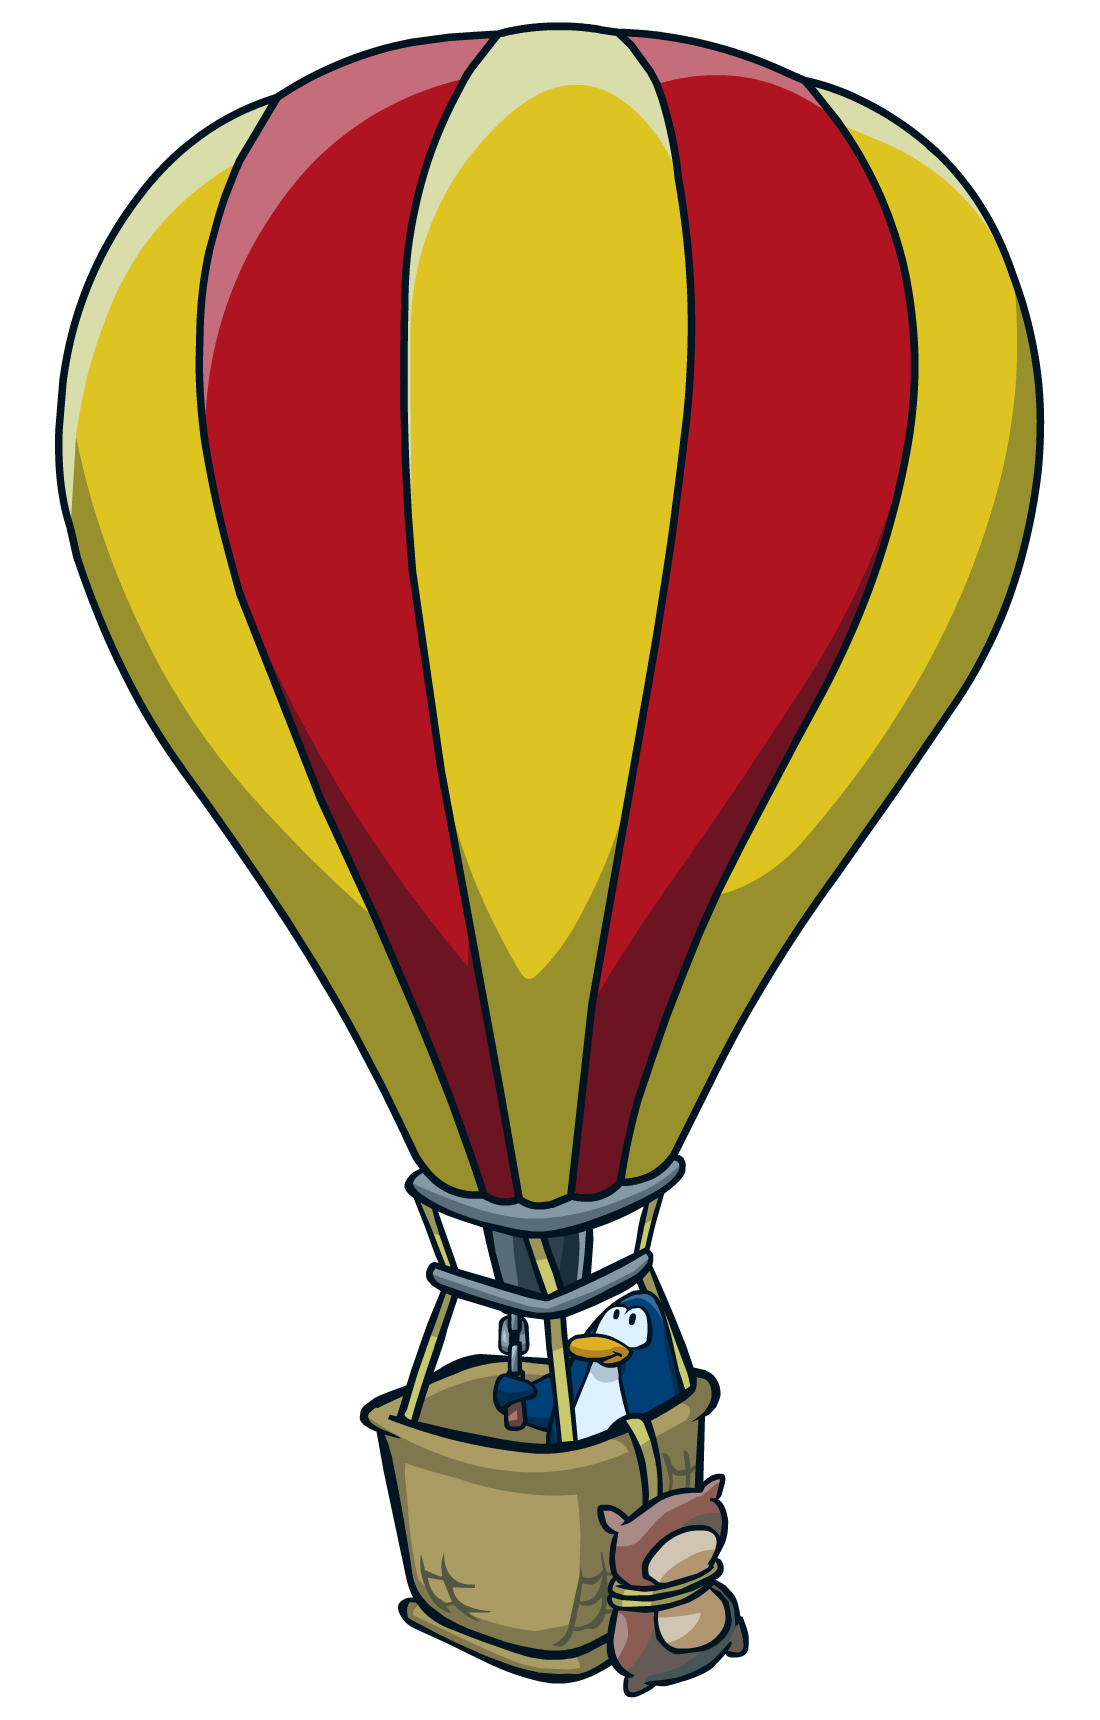 Hot Air Balloon Png Clip Art Image Hot Air Balloon Clipart Hot Air